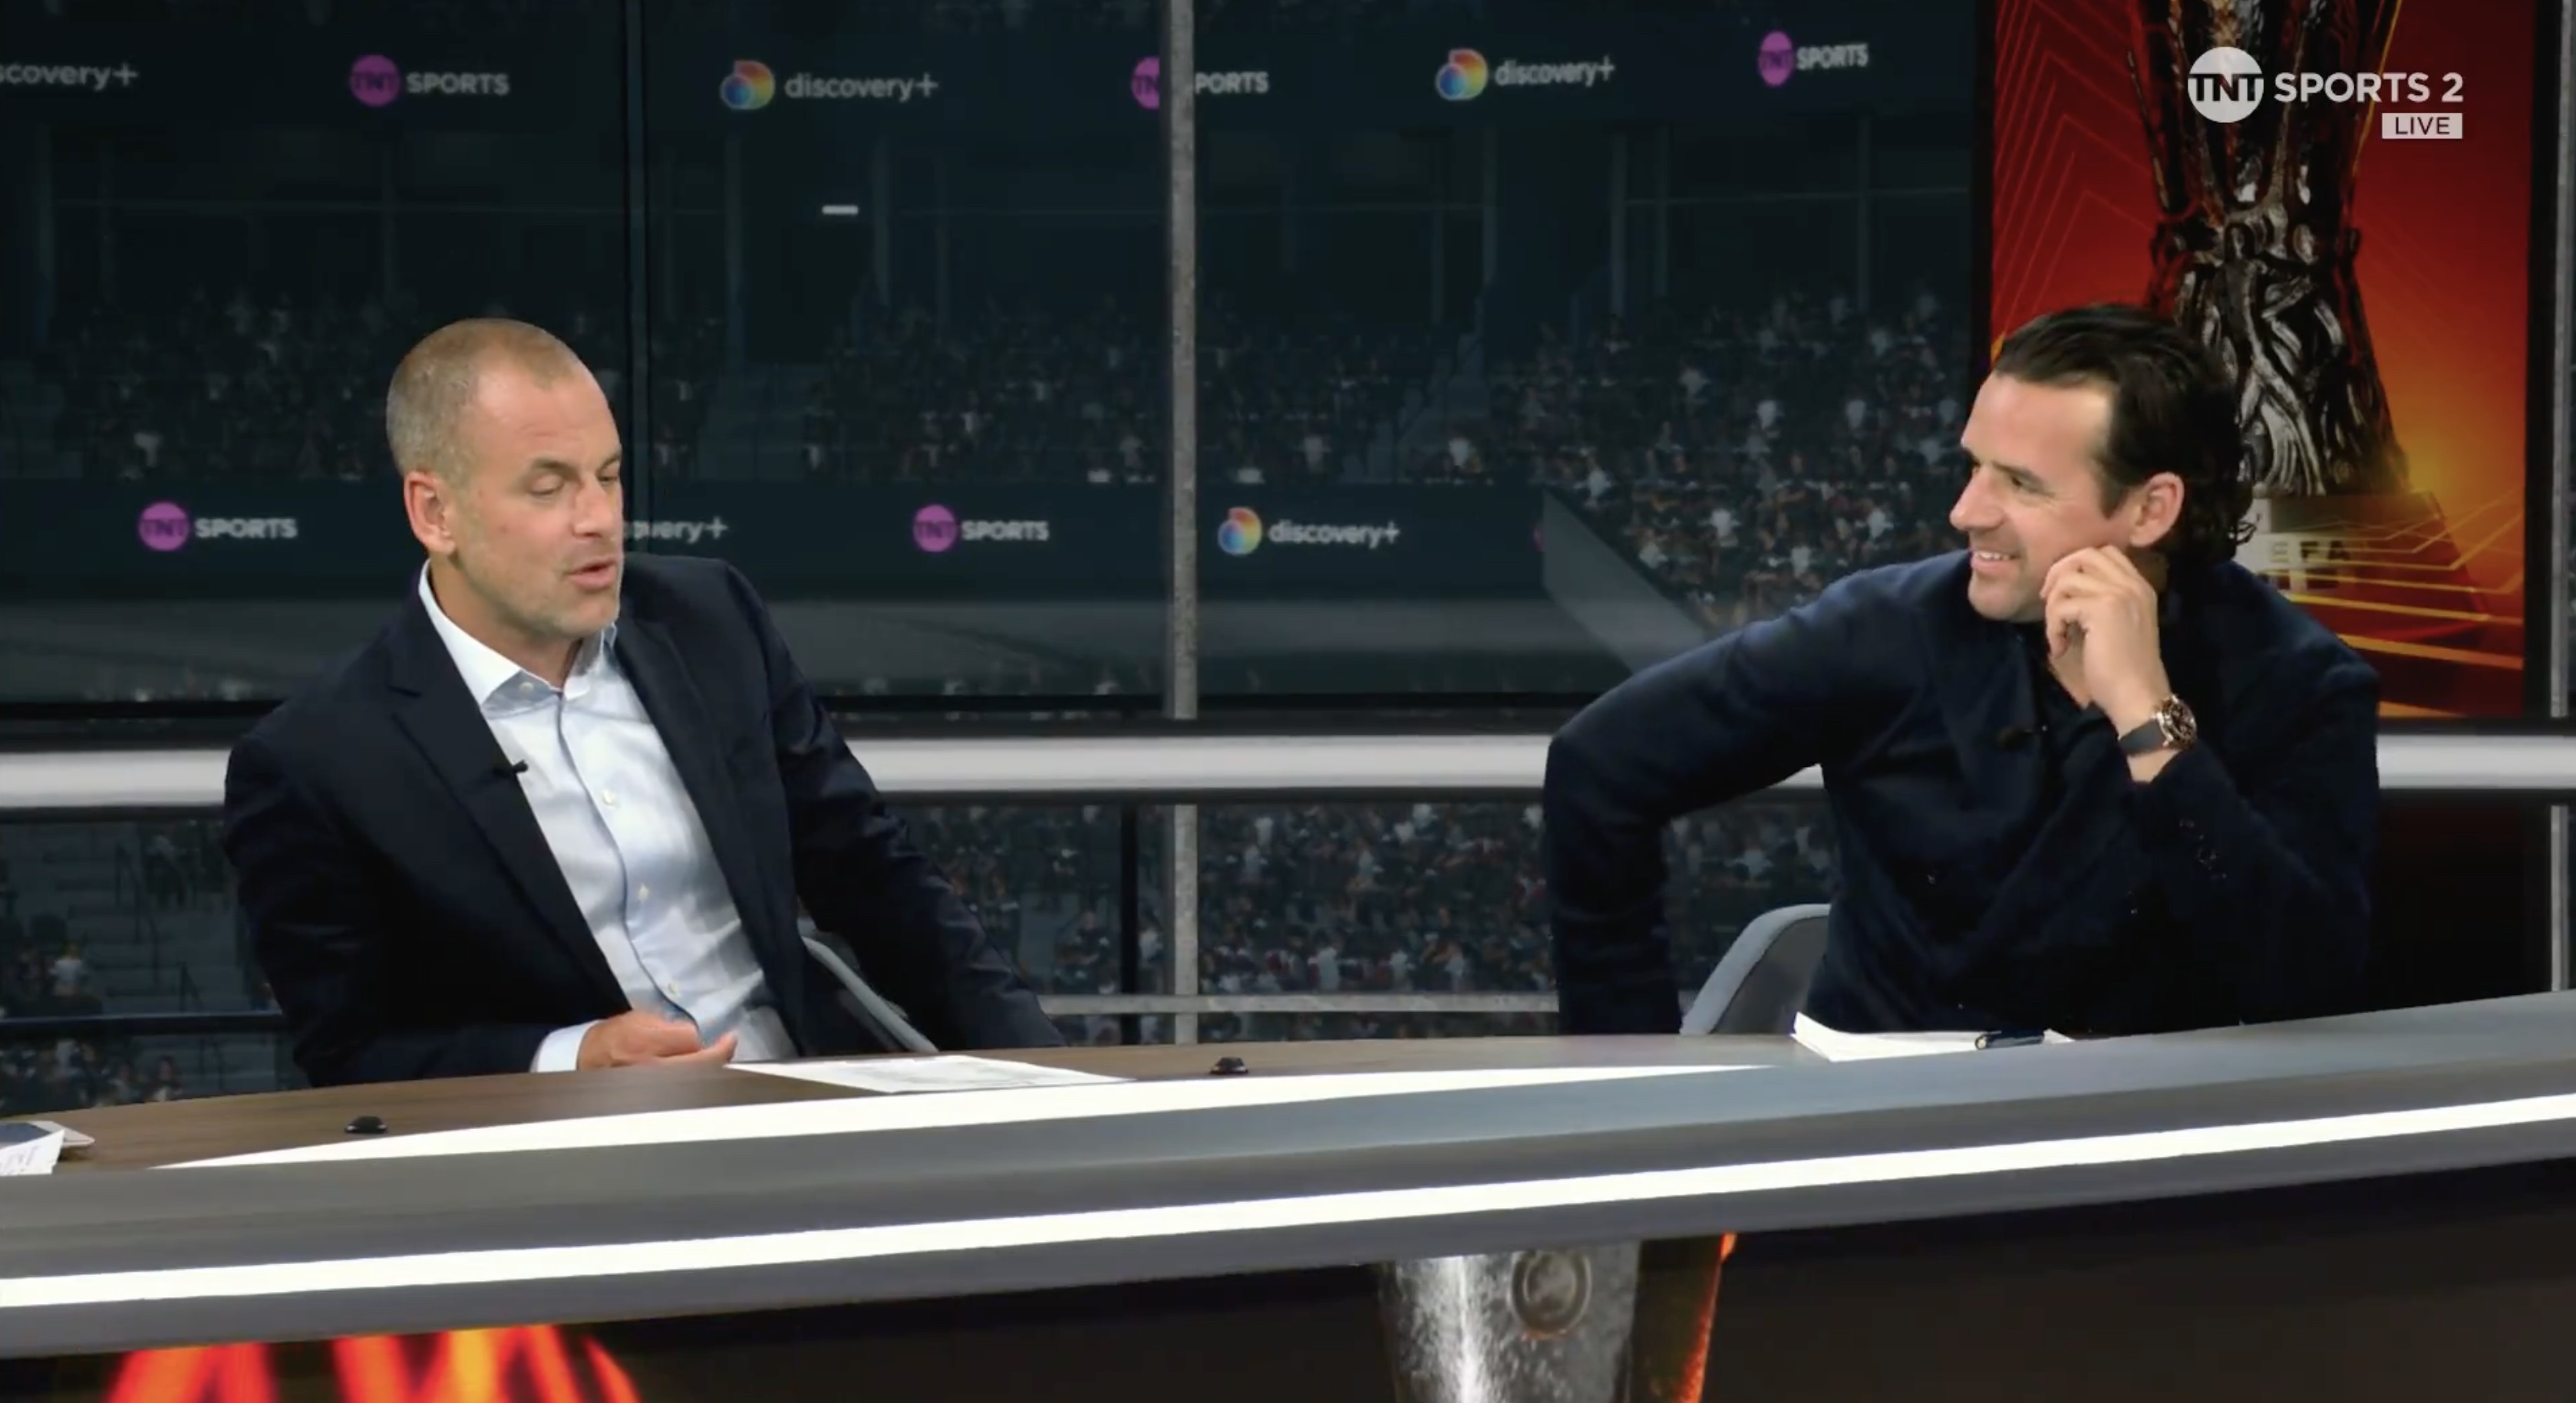 Video: Owen Hargreaves jokes Xabi Alonso should retire if he completes unbeaten treble